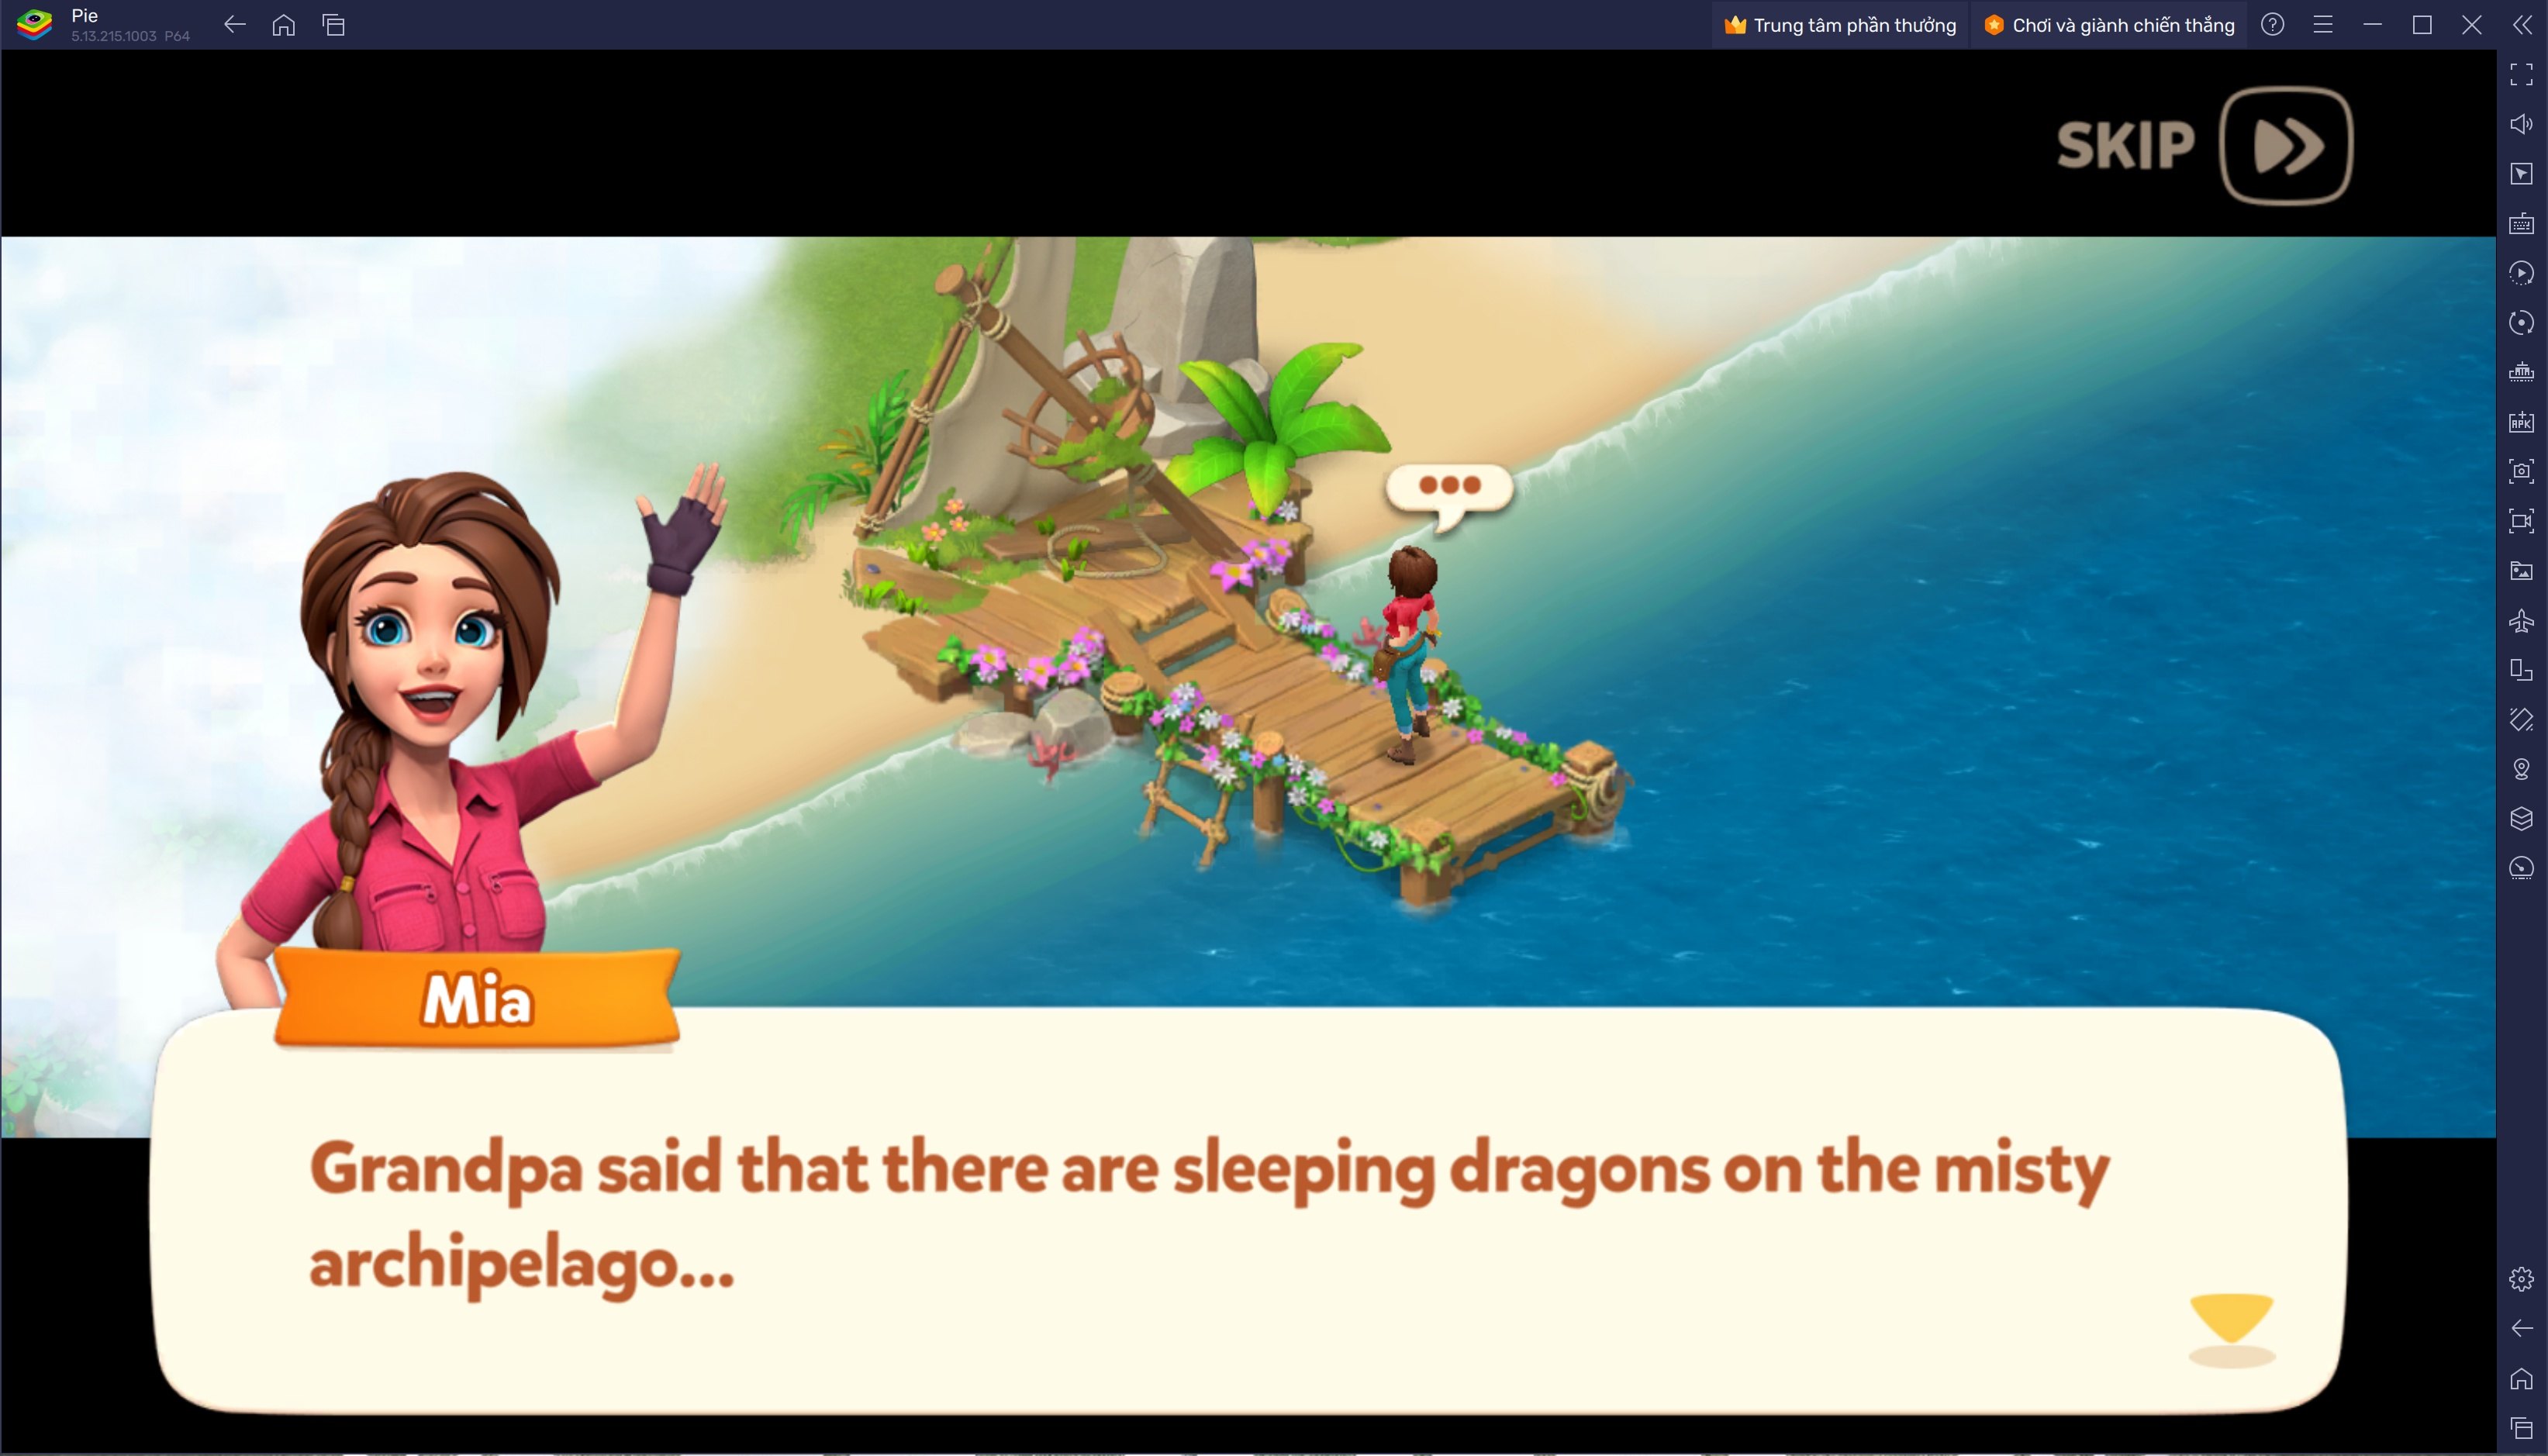 Cùng chơi Dragonscapes Adventure, game nông trại bối cảnh thế giới rồng trên PC với BlueStacks